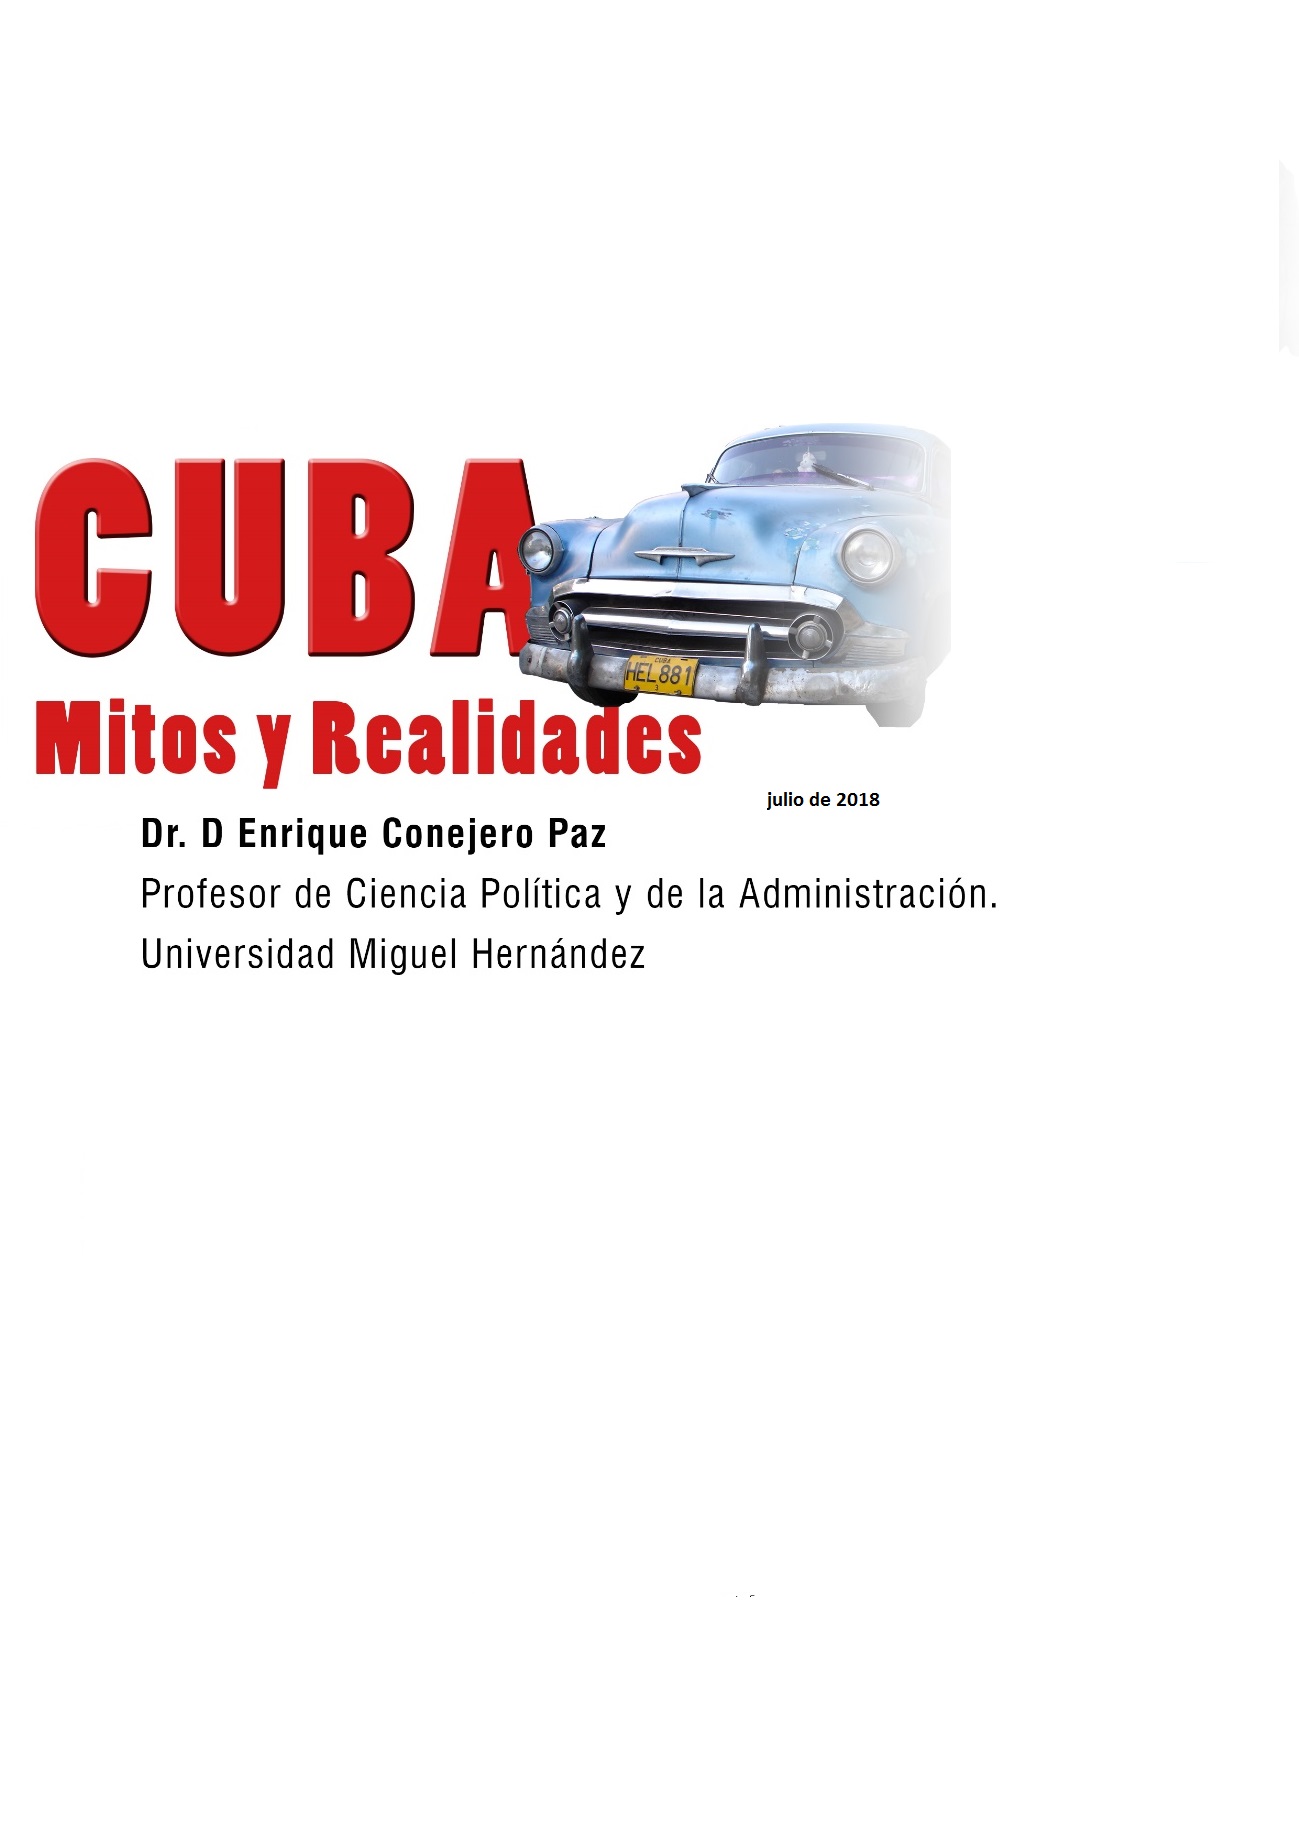 CUBA: MITOS Y REALIDADES FPO9565